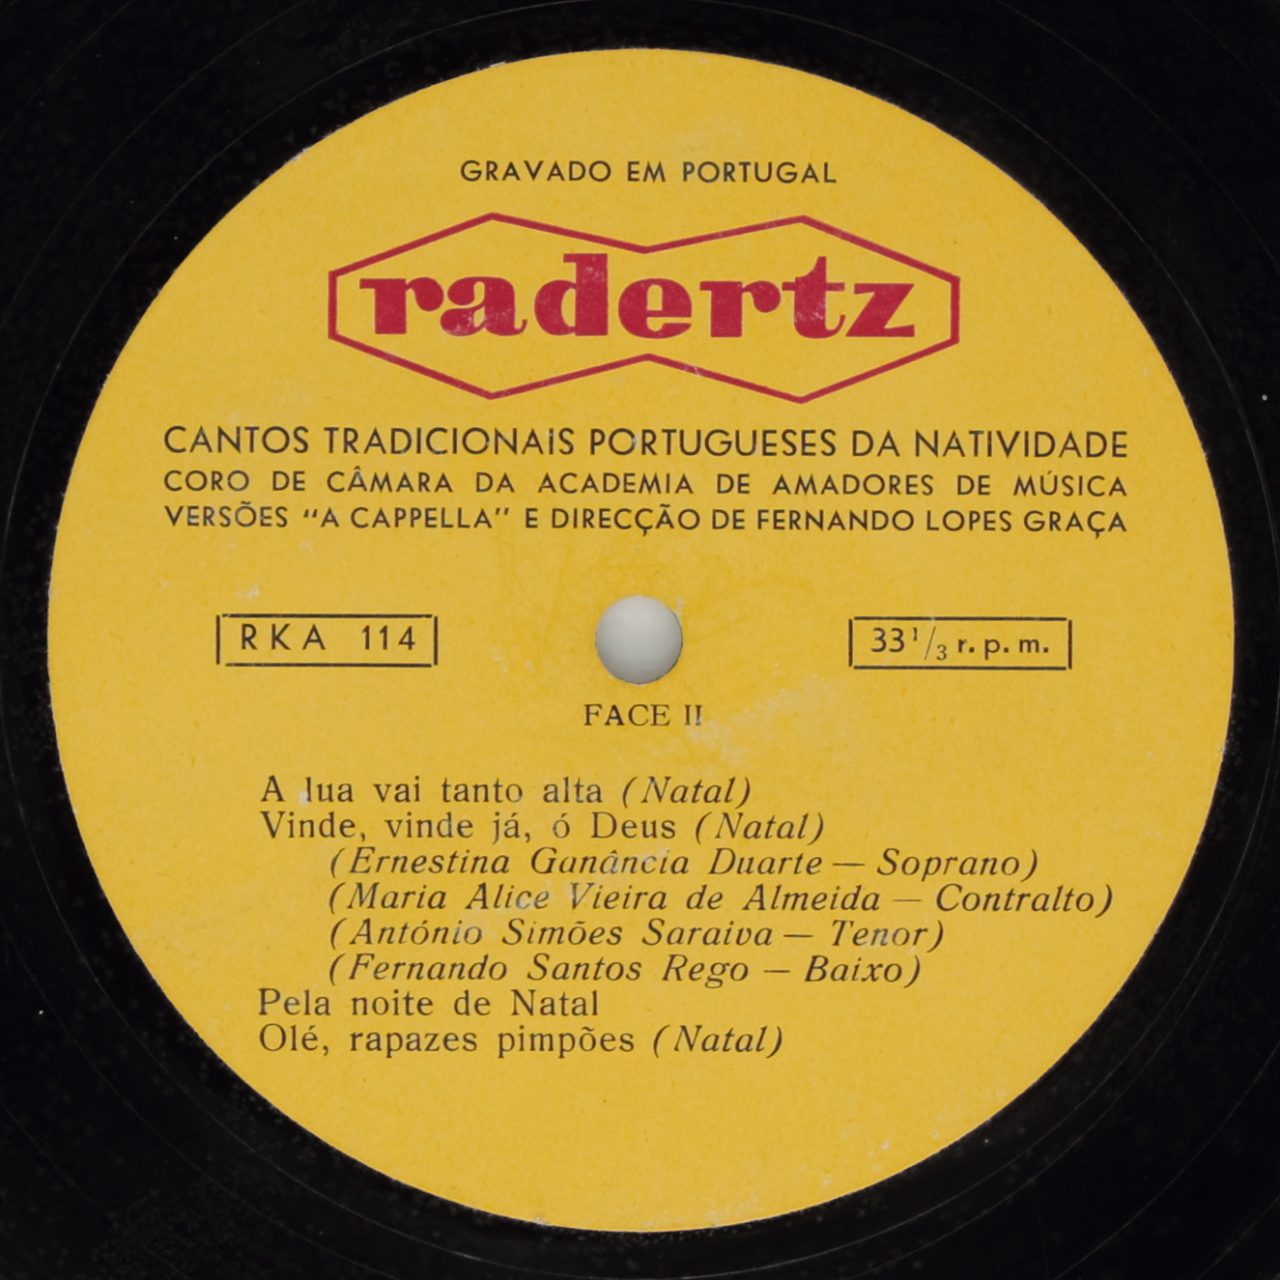 Lopes-Graça: Cantos tradicionais portugueses da natividade